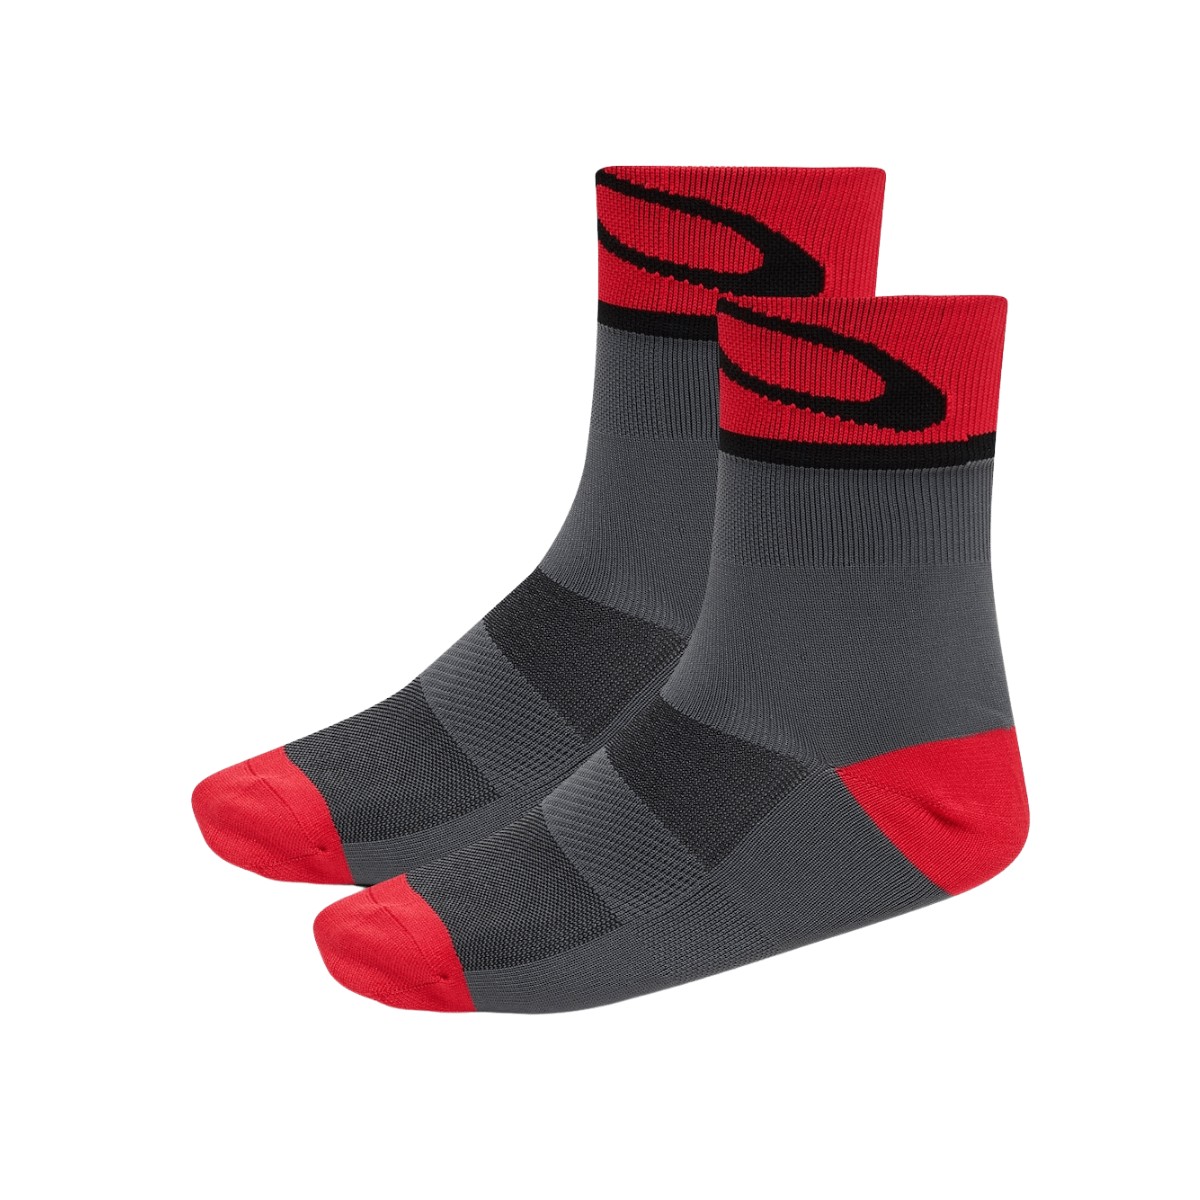 Oakley 3.0 Socks Gray Red, Size M